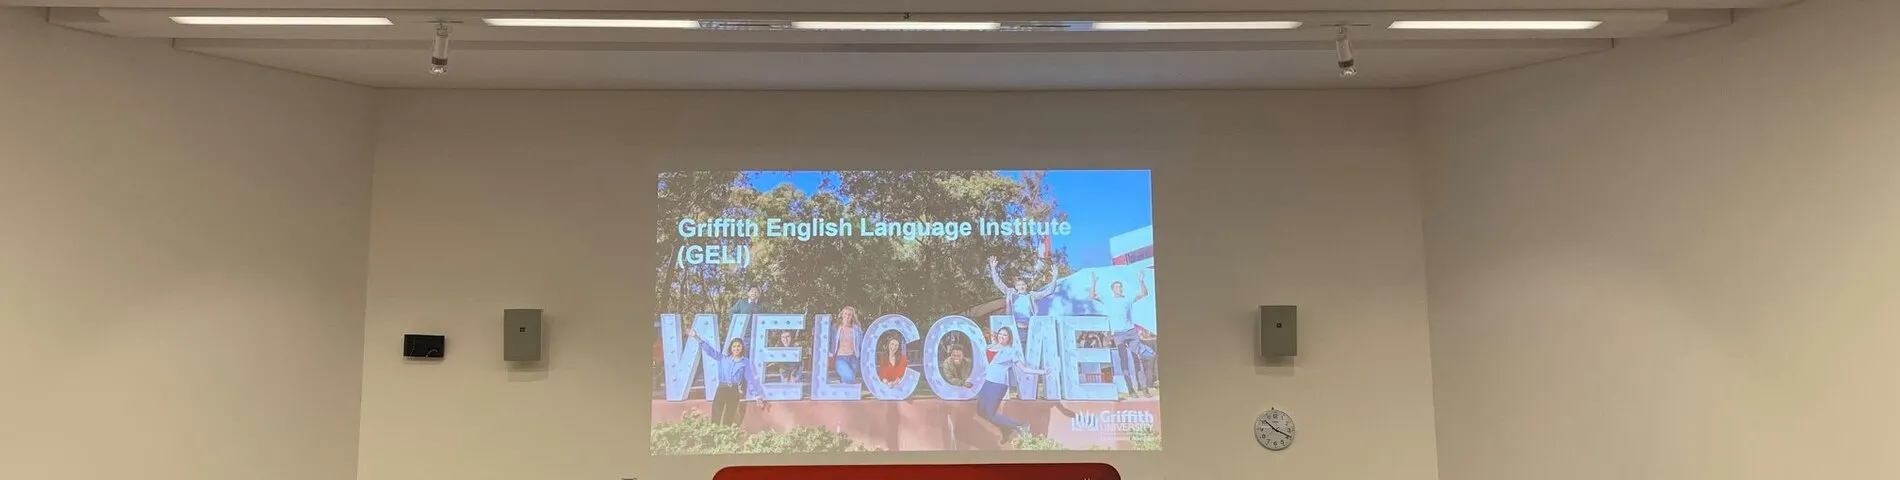 Griffith English Language Institute kép 1